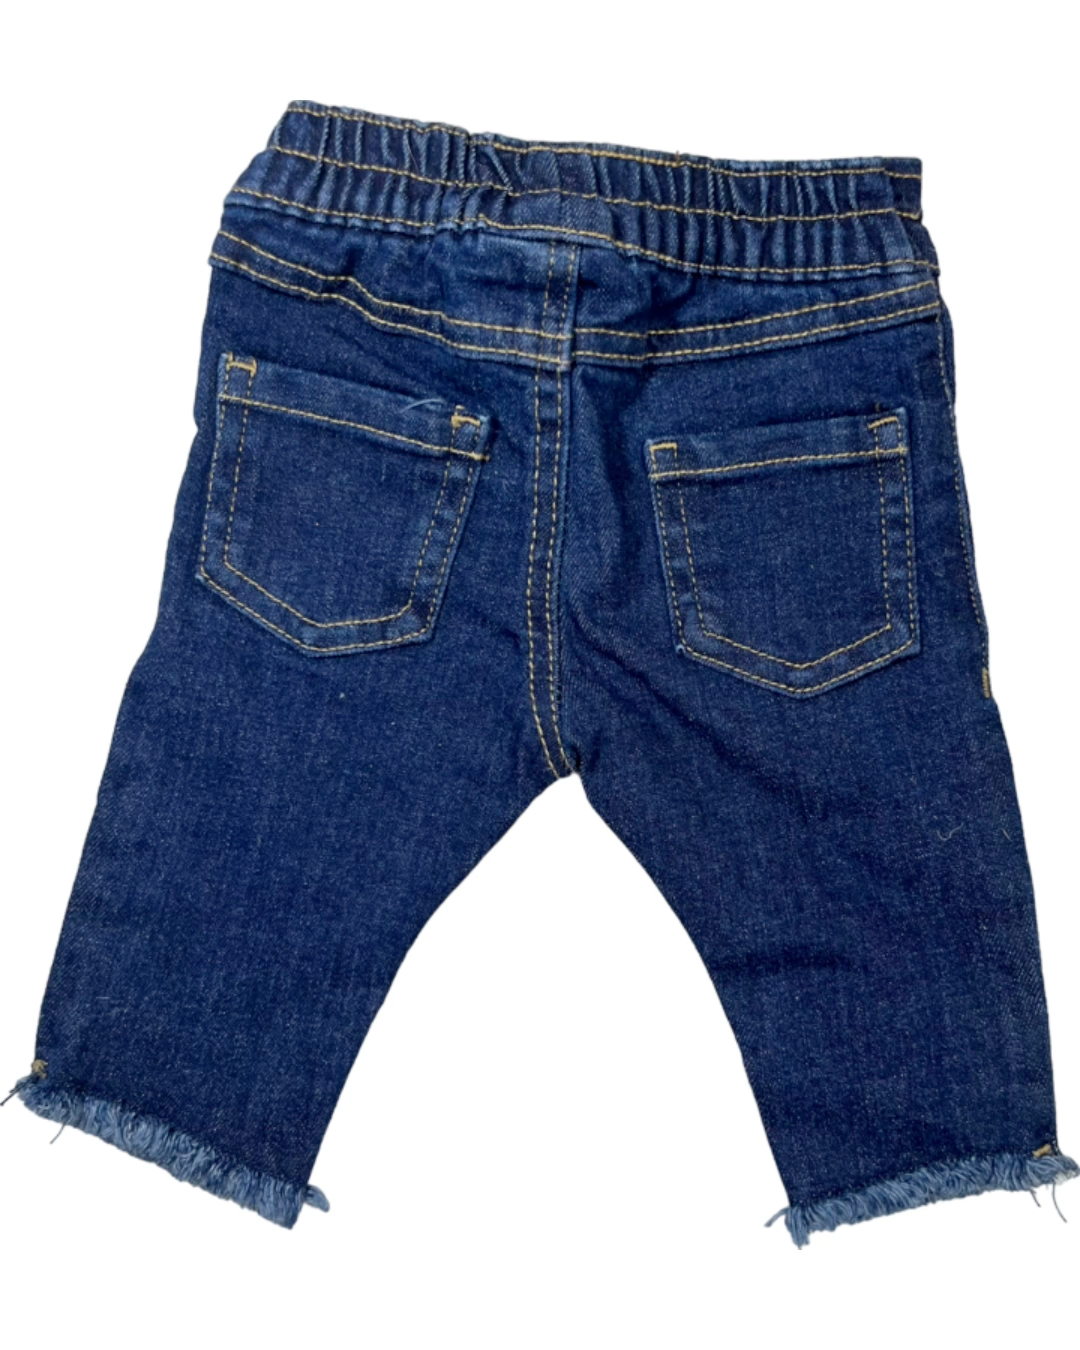 Garanimals Jeans (0-3M)